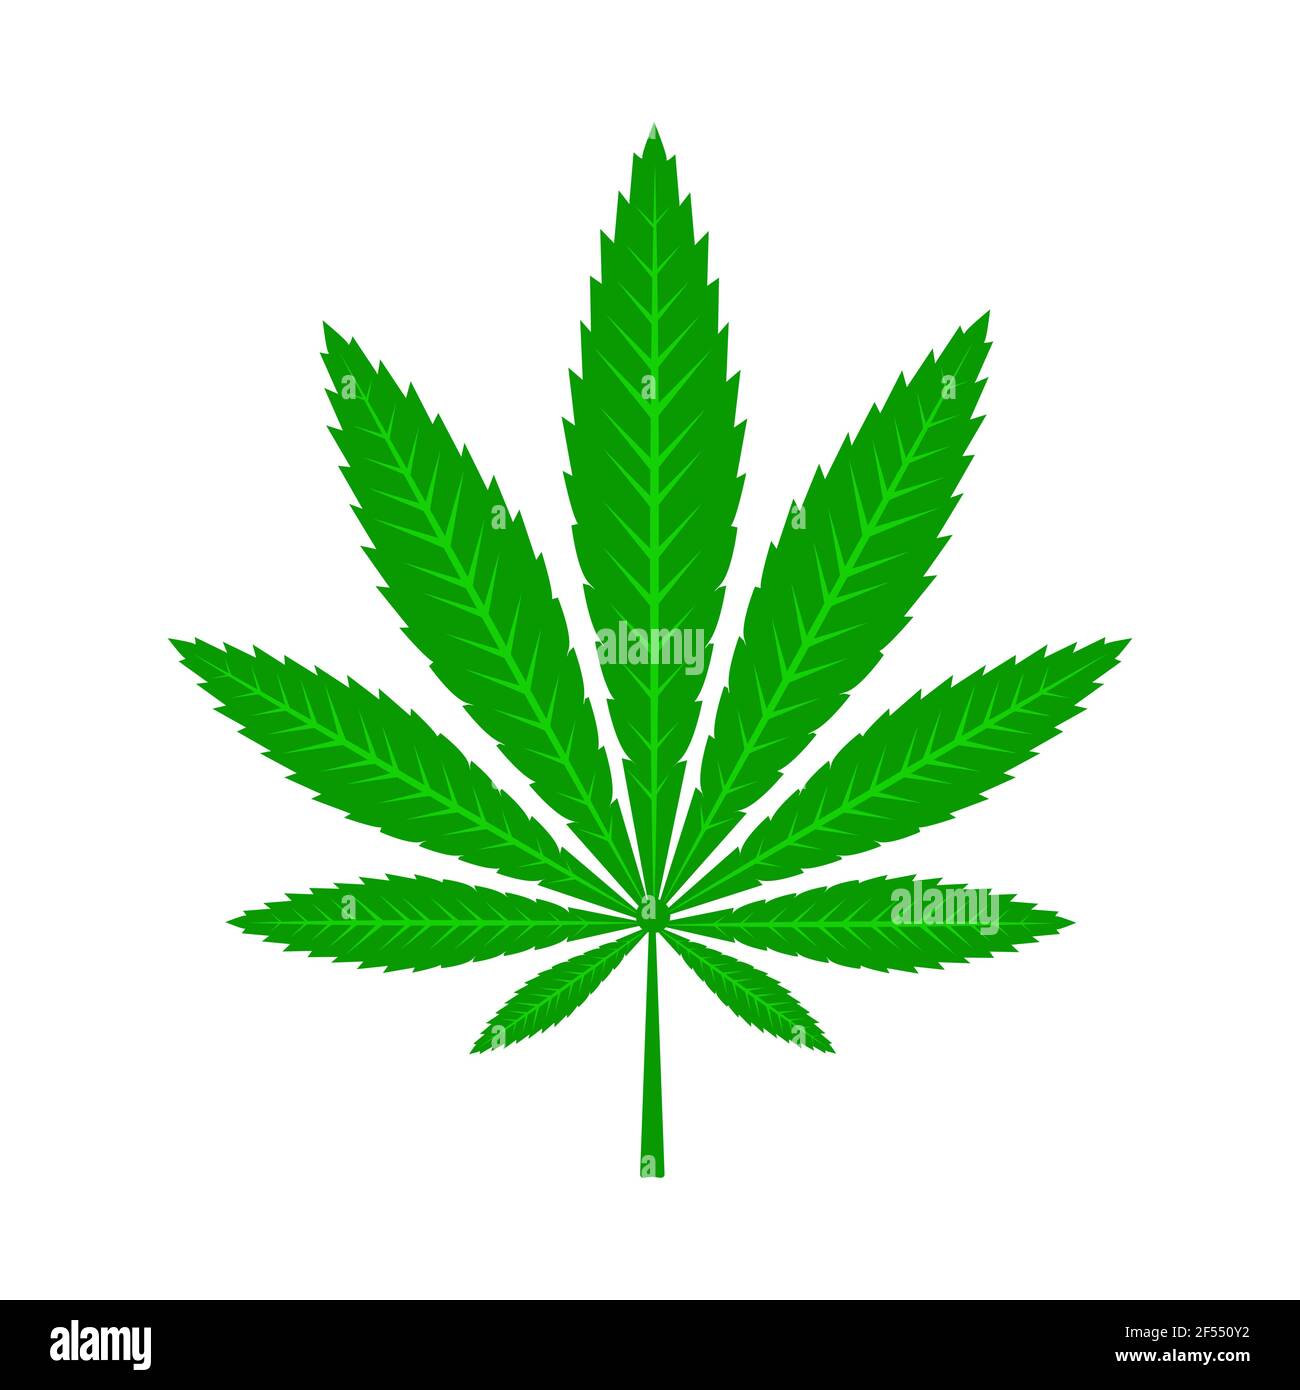 Foglia verde di cannabis medica. Marijuana plant.Hemp foglia isolato. Immagine piatta vettoriale. Illustrazione Vettoriale